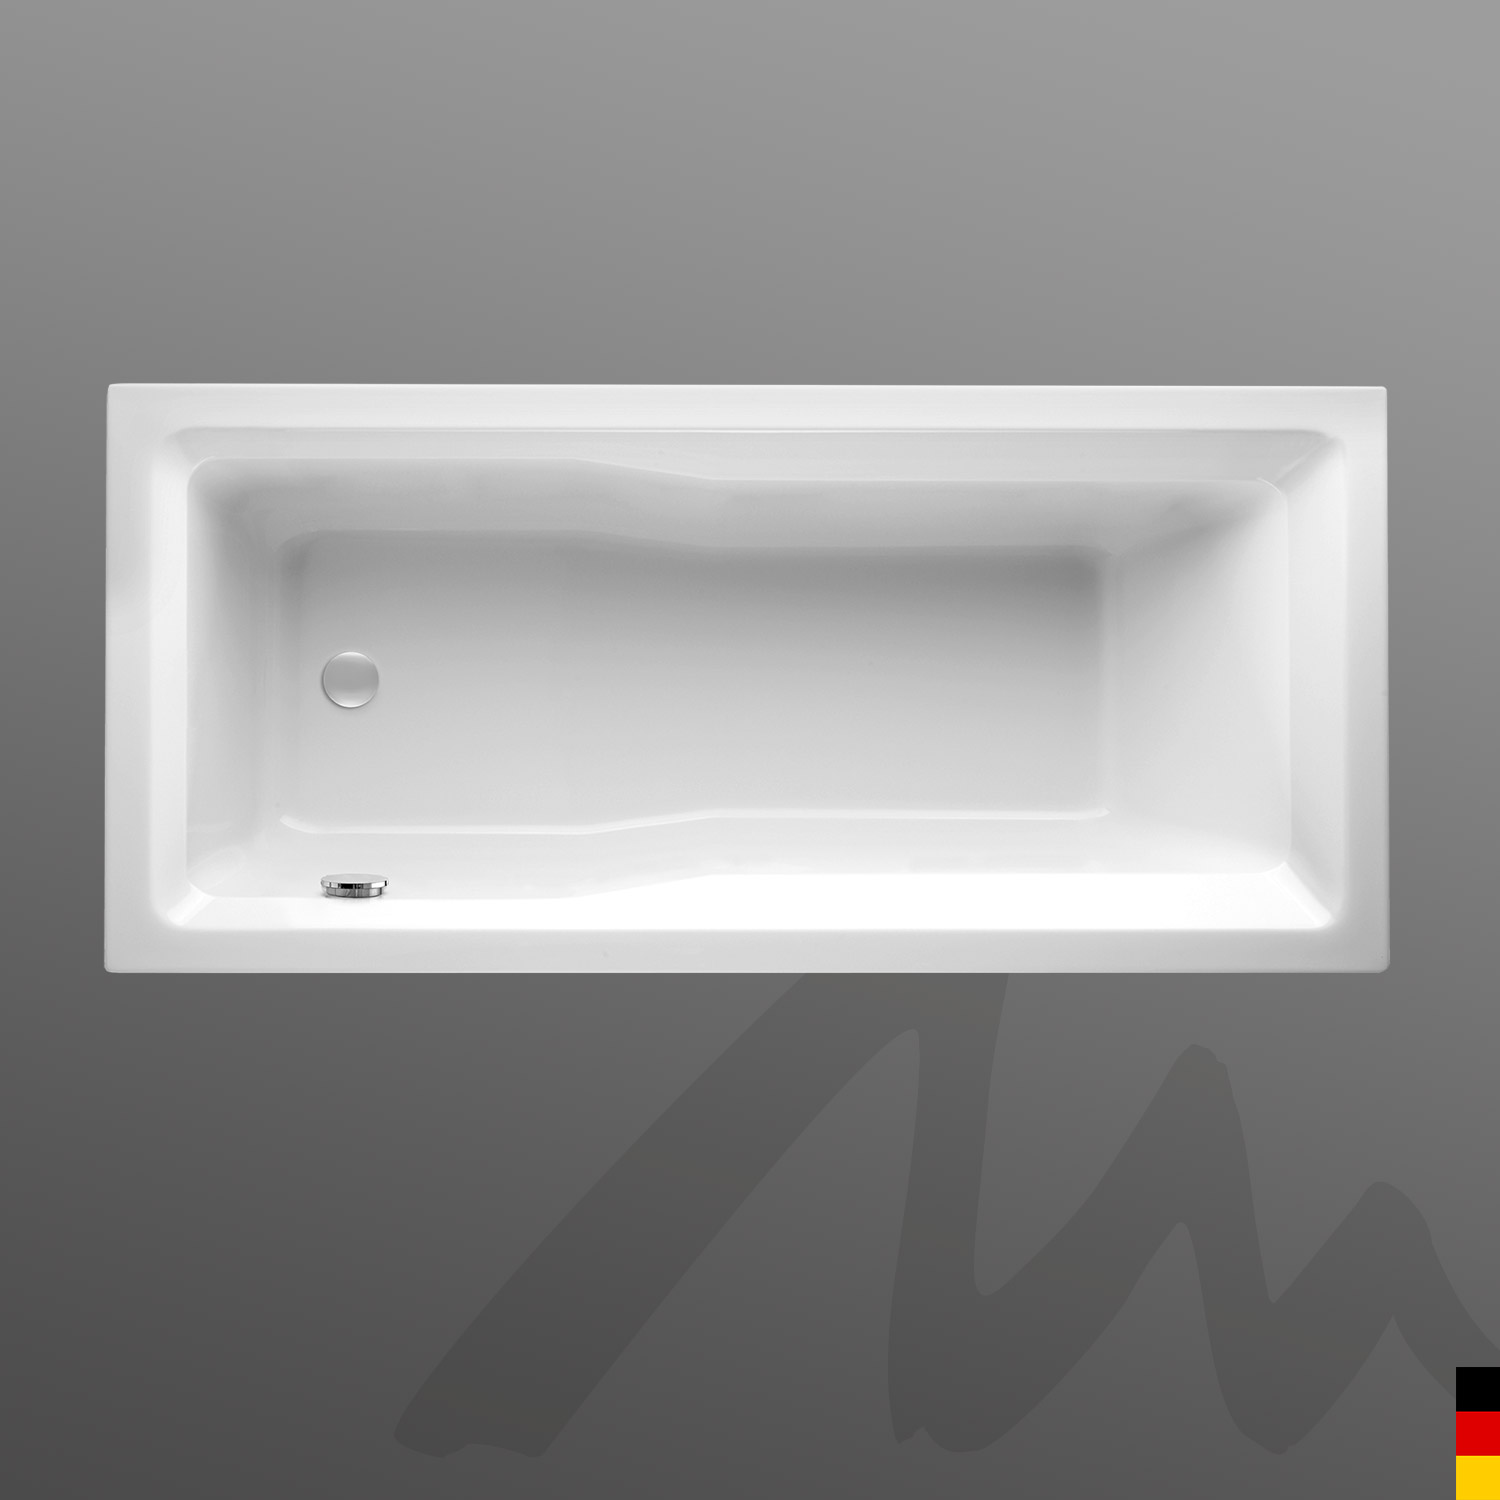 Mauersberger Badewanne Rechteck Jatro 175/80  175x80x42  Farbe:weiß